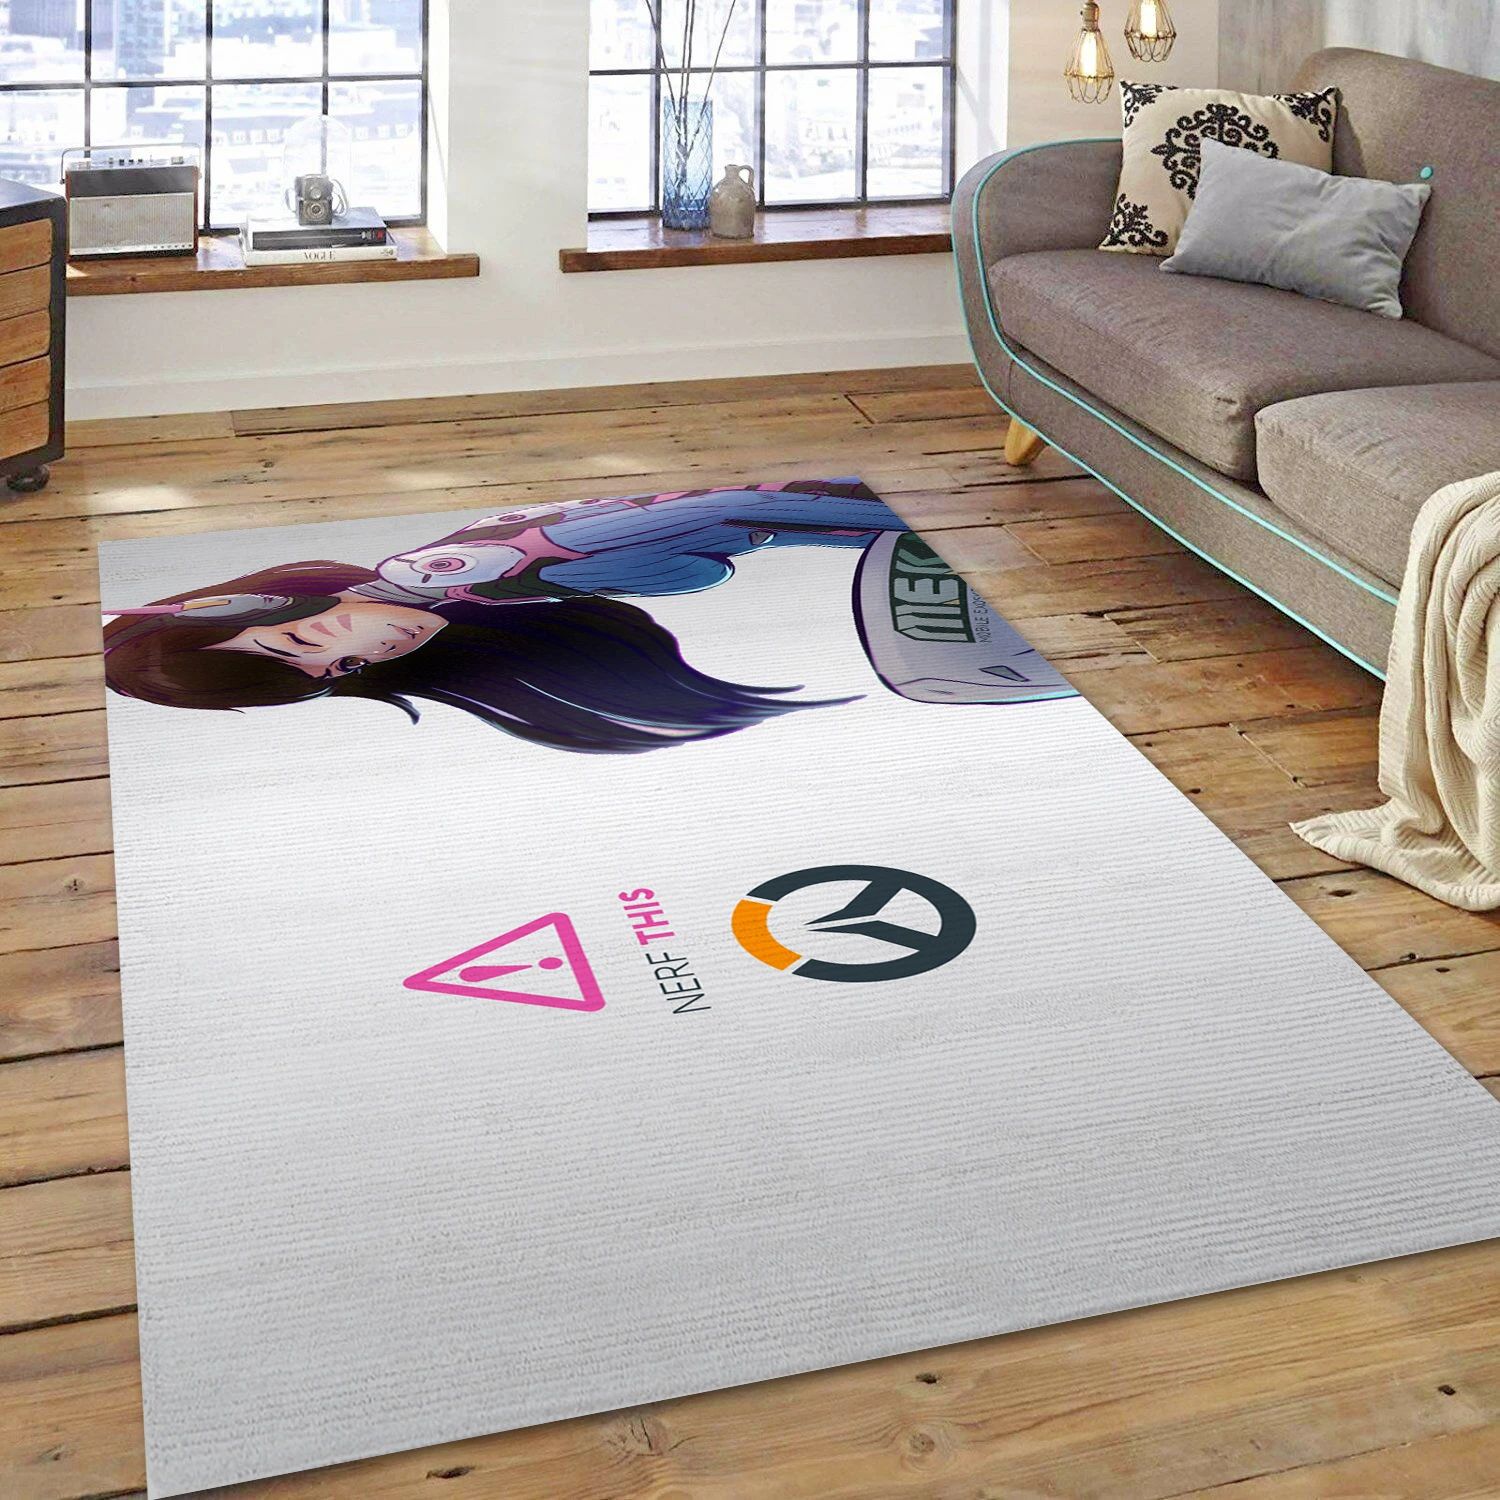 D Va Overwatch Game Area Rug Carpet, Bedroom Rug - Family Gift US Decor - Indoor Outdoor Rugs 1